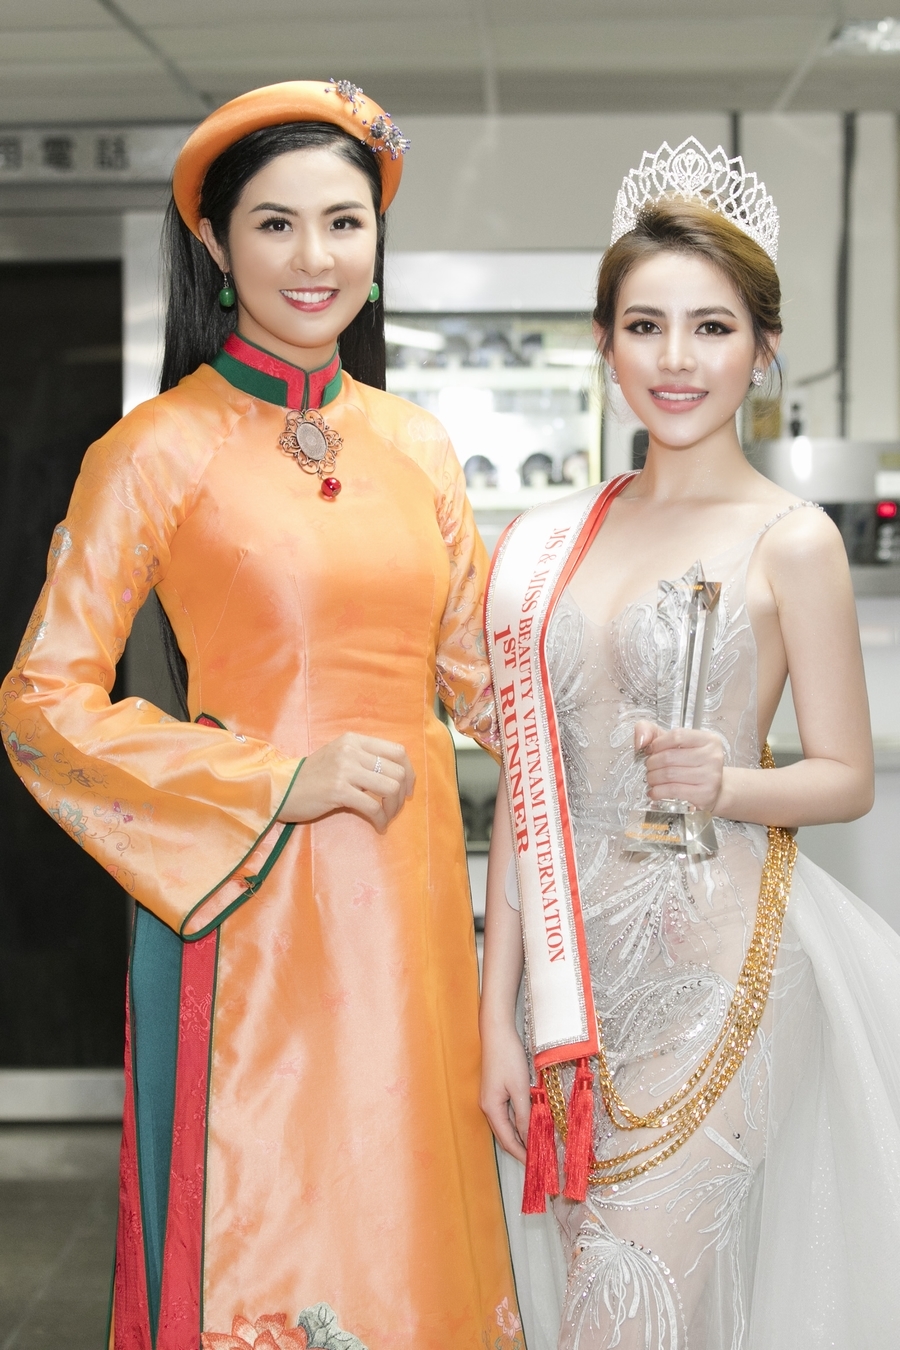 Âm thầm đi thi: Con gái diễn viên Hữu Tiến lên ngôi Á hậu Sắc đẹp Việt Nam Quốc tế 2019